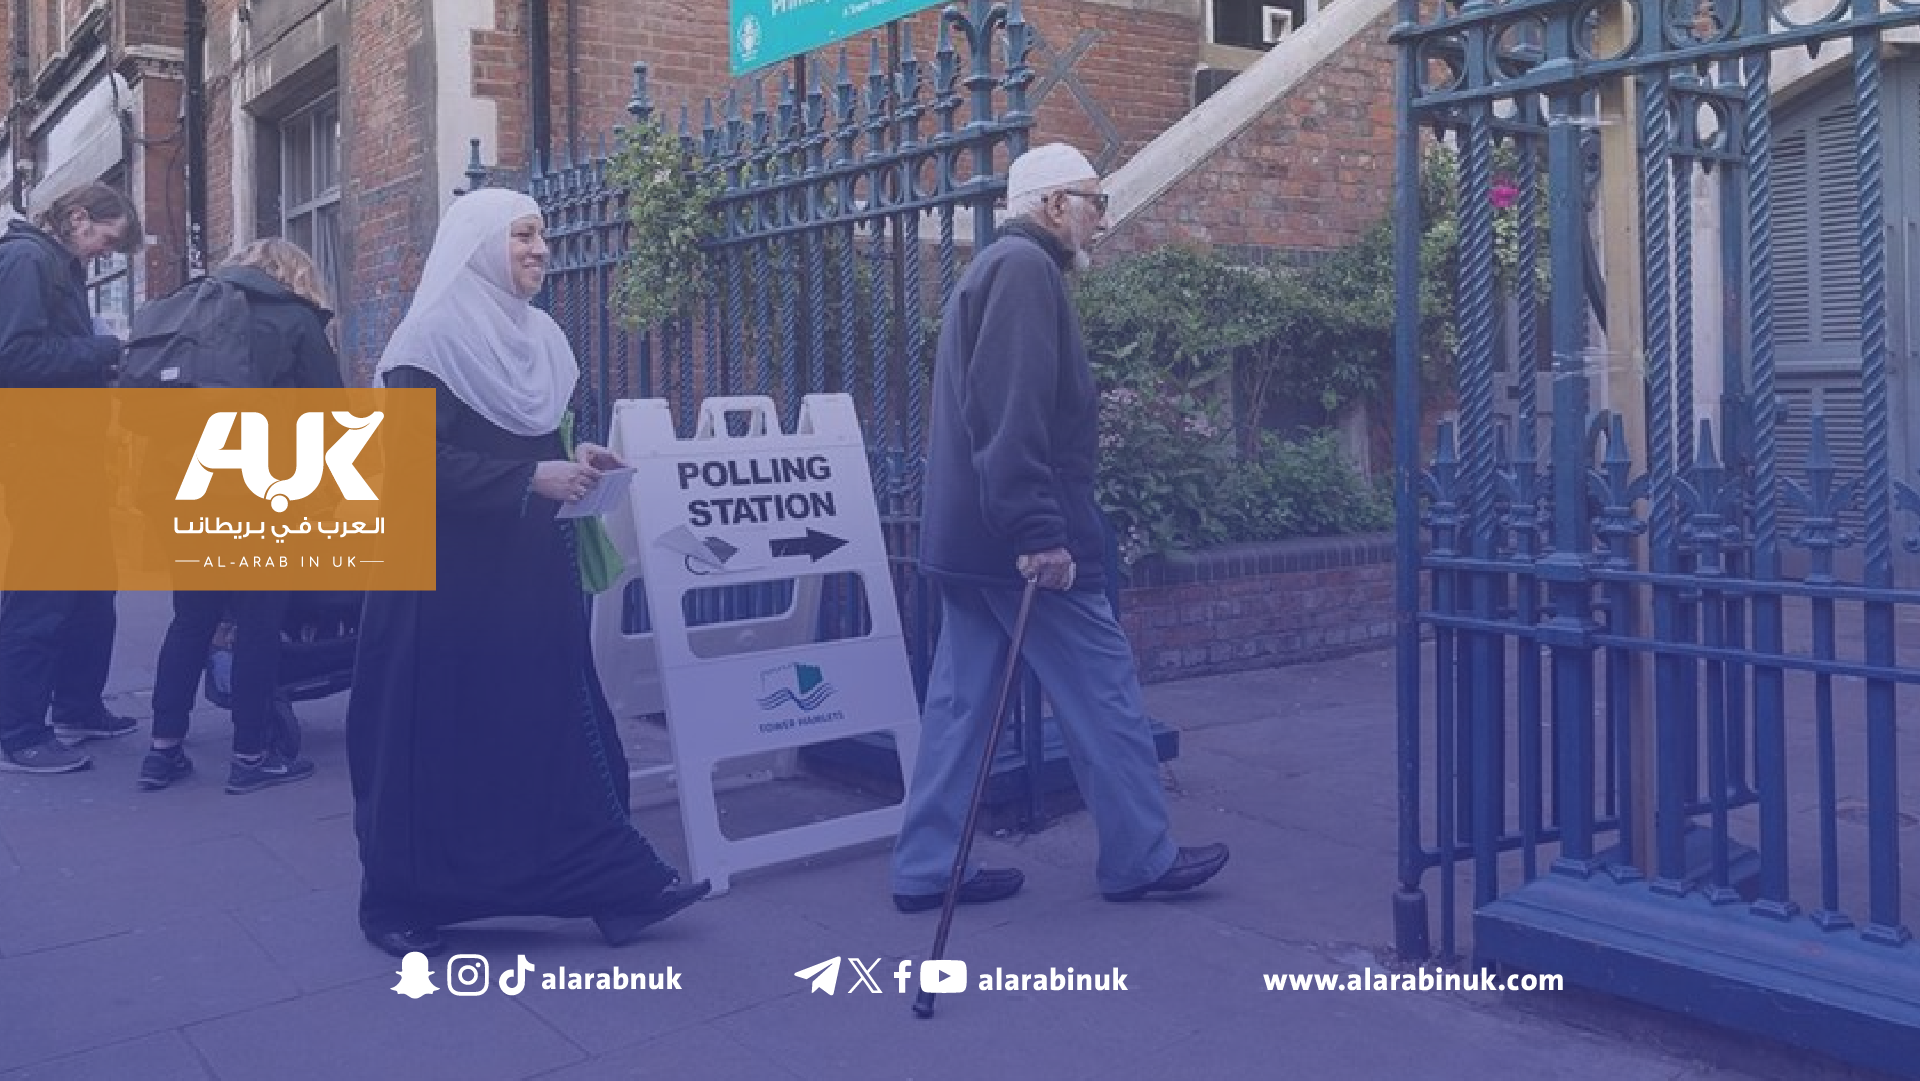 حملة الصوت العربي في بريطانيا تطلق نداء مهمًّا بشأن انتخابات الرابع من يوليو